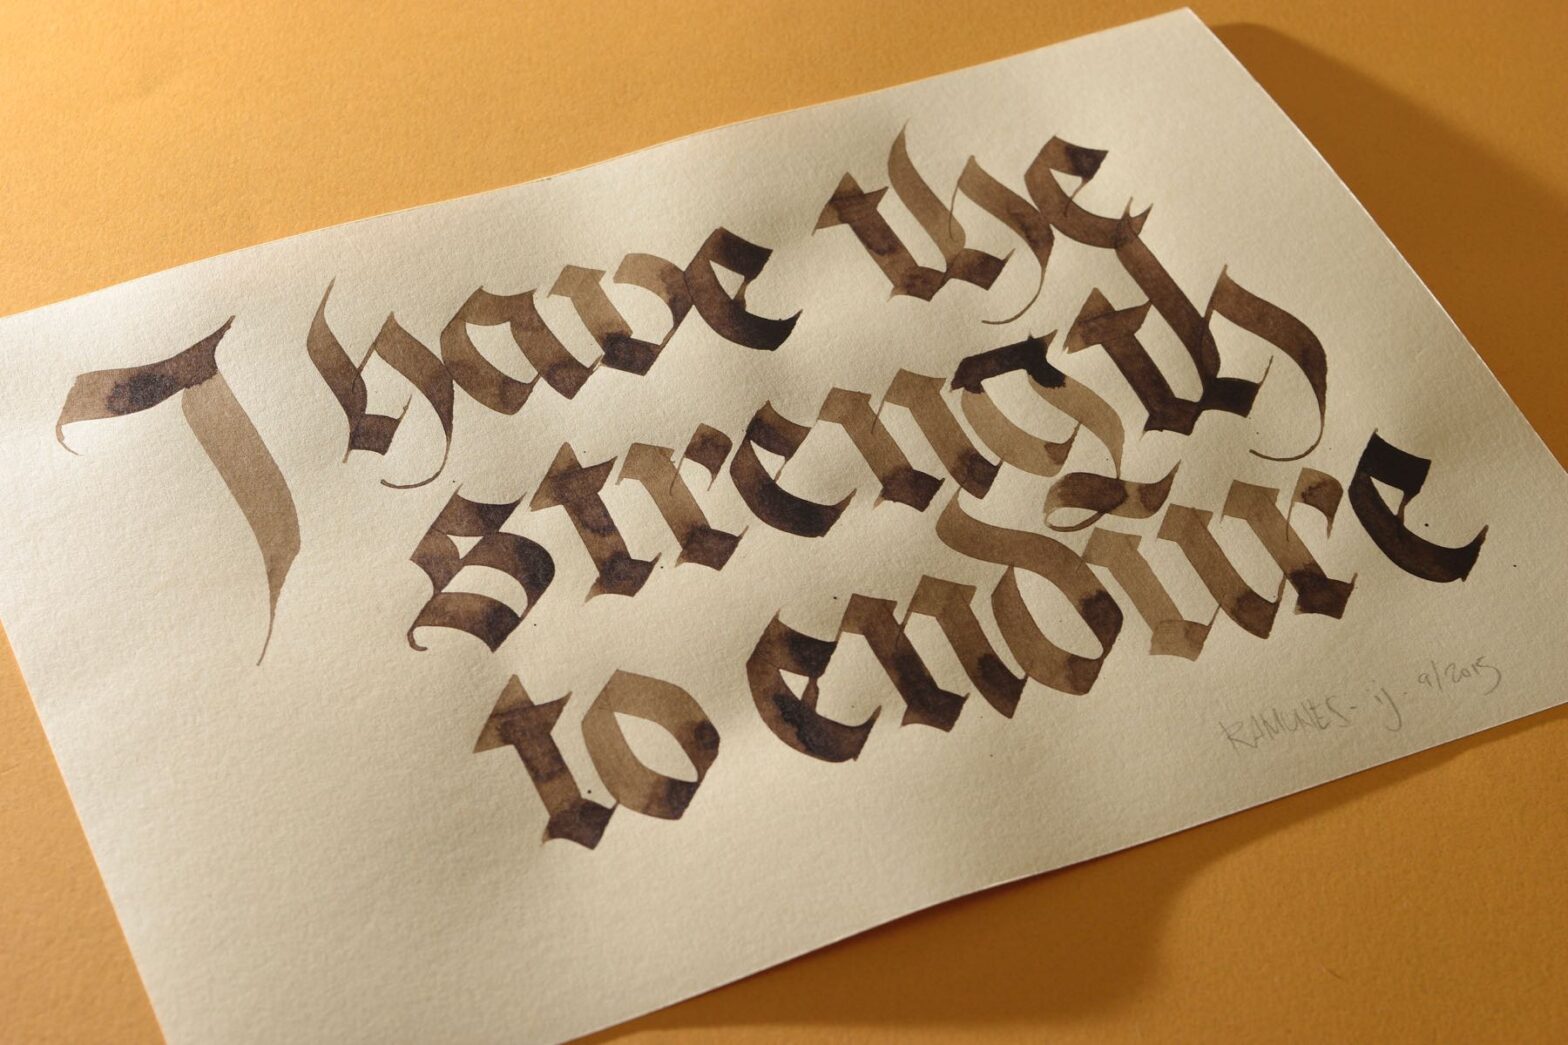 Caligrafia onde se lê “I ha the strength to endure” em papel creme sobre fundo amarelo